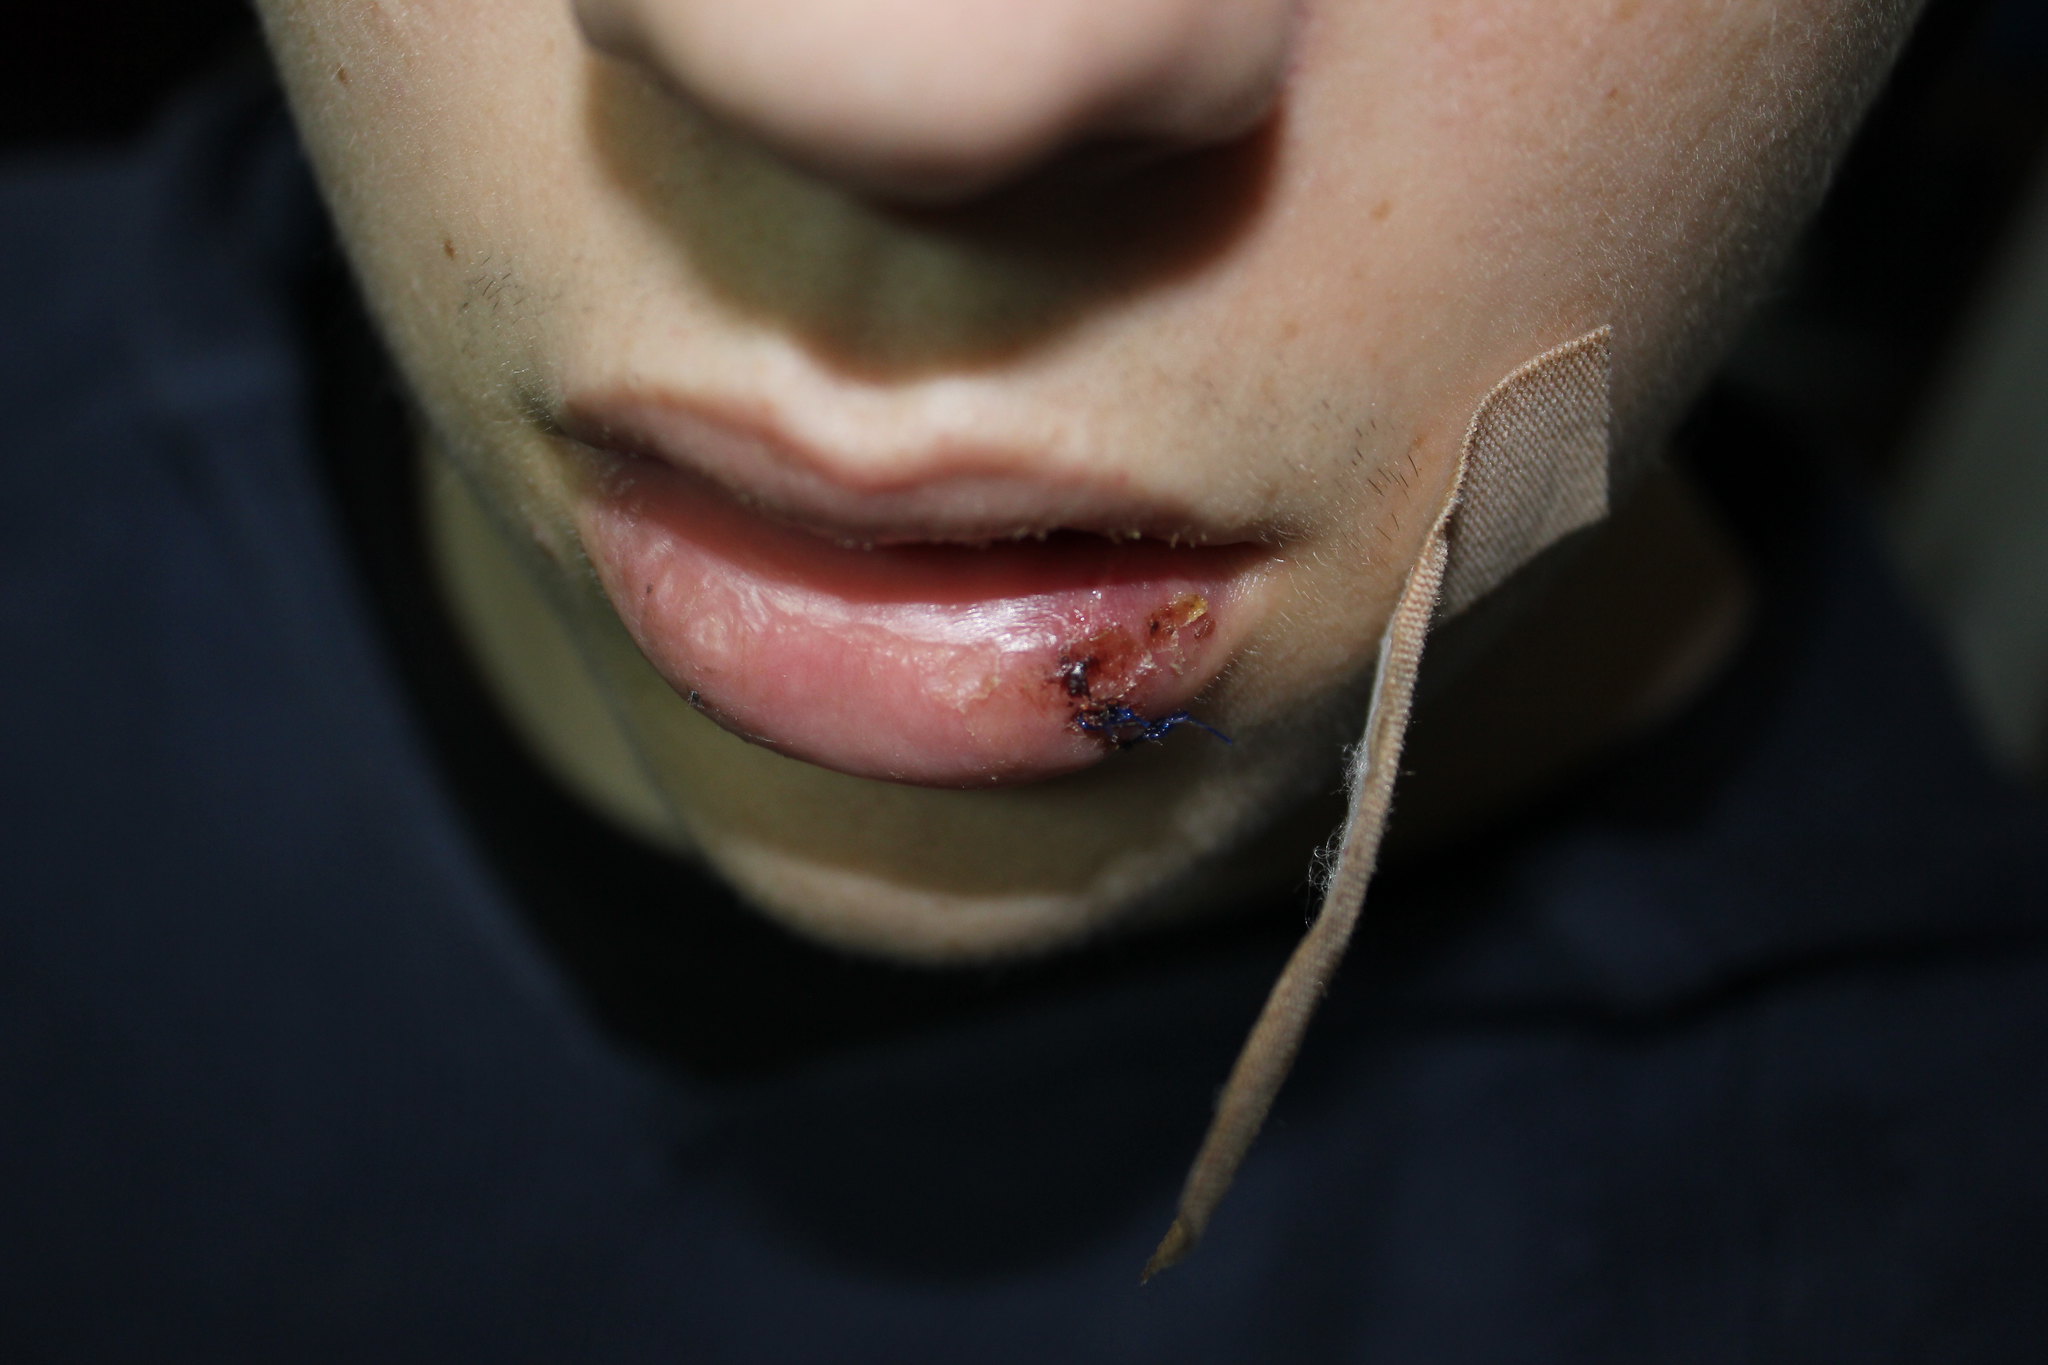 Ein Schüler aus Kolpino wurde von der Polizei wegen des Verdachts des Ladendiebstahls brutal geschlagen